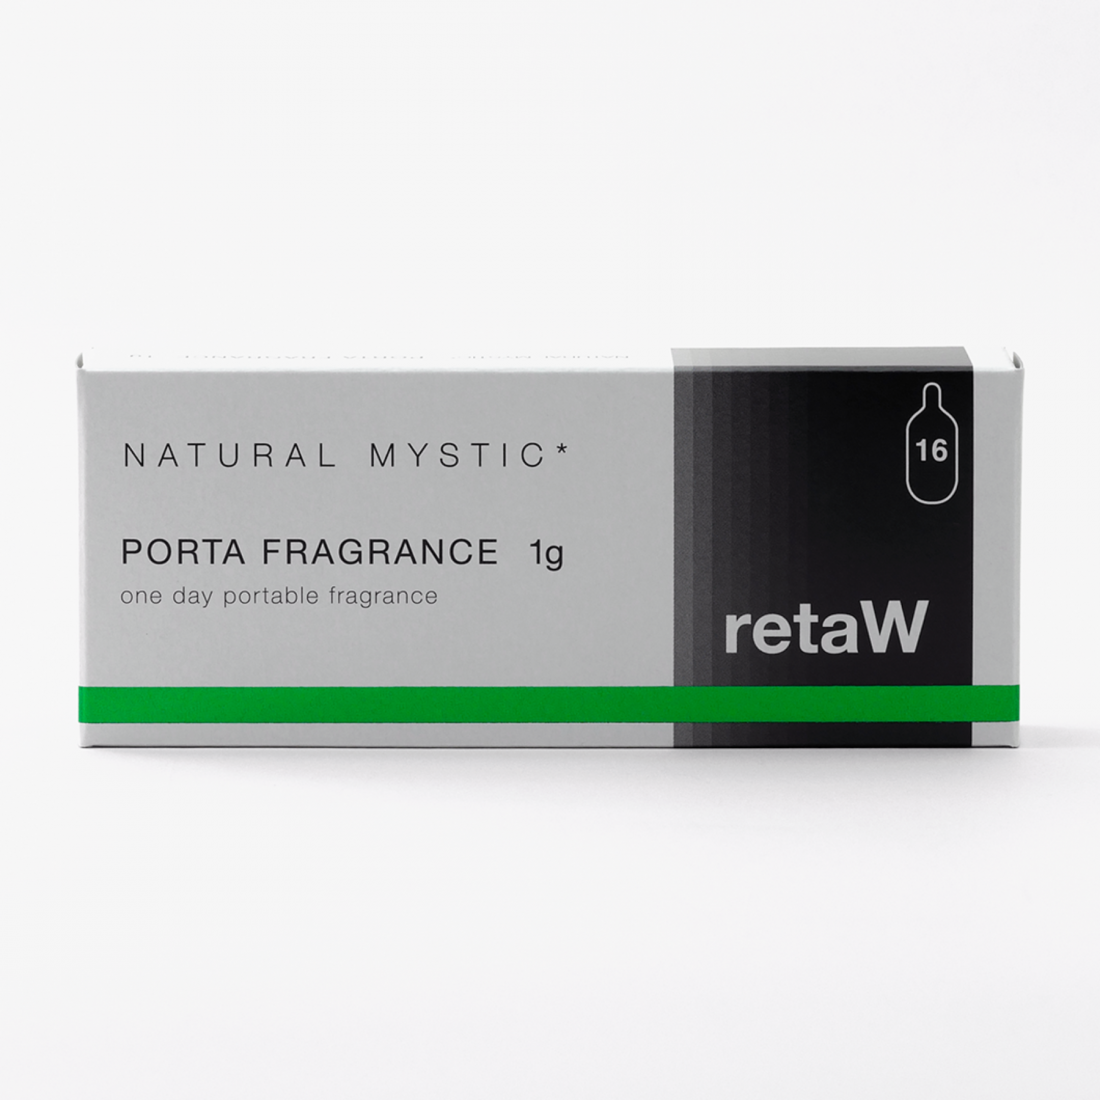 retaW / PORTA FRAGRANCE NATURAL MYSTIC*